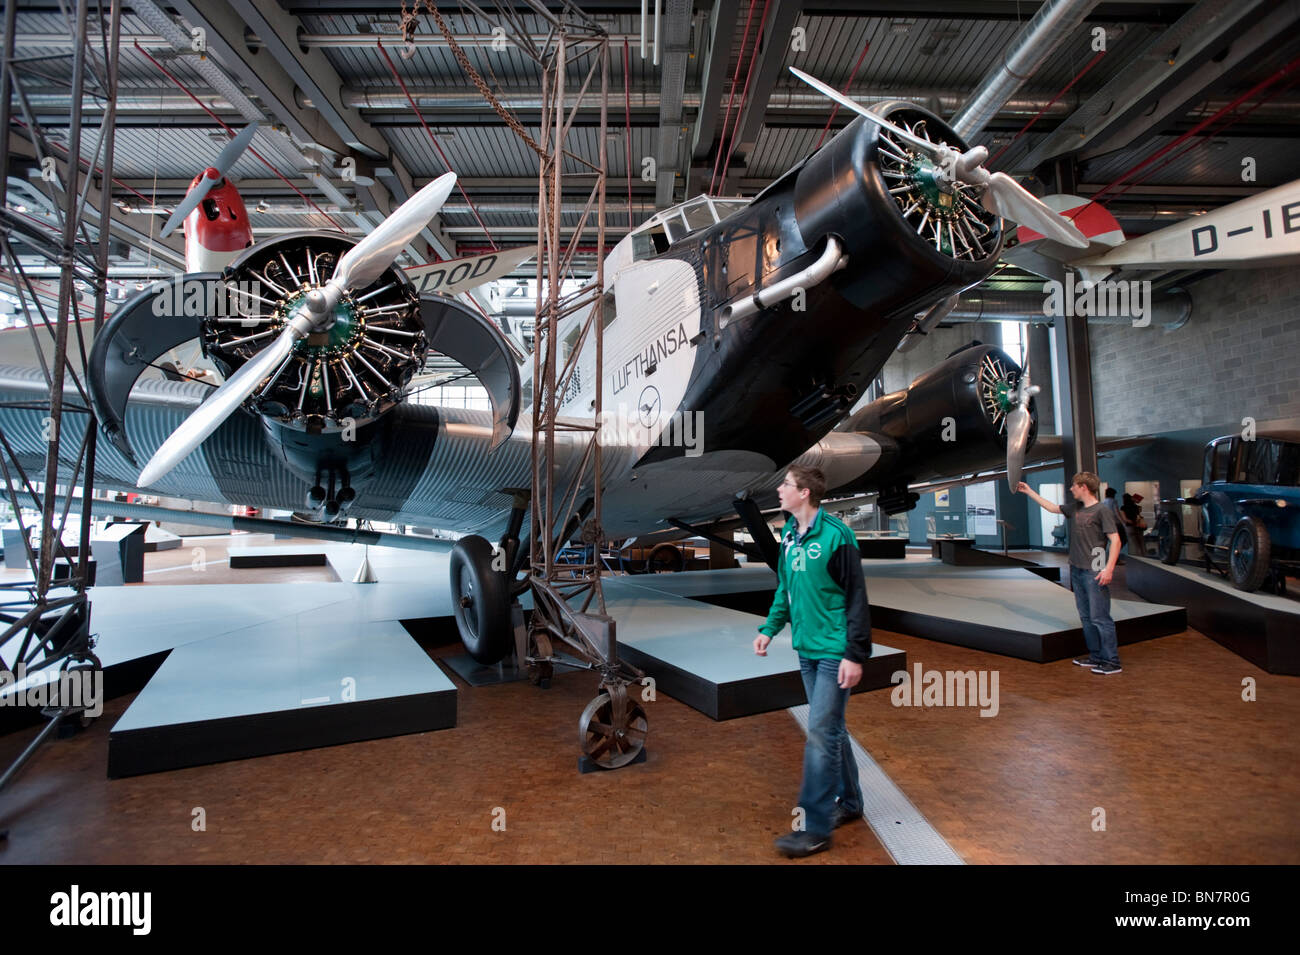 Aeroplani storici in esposizione presso il Deutsches Technikmuseum o tecnologia tedesca Museum a Berlino Germania Foto Stock